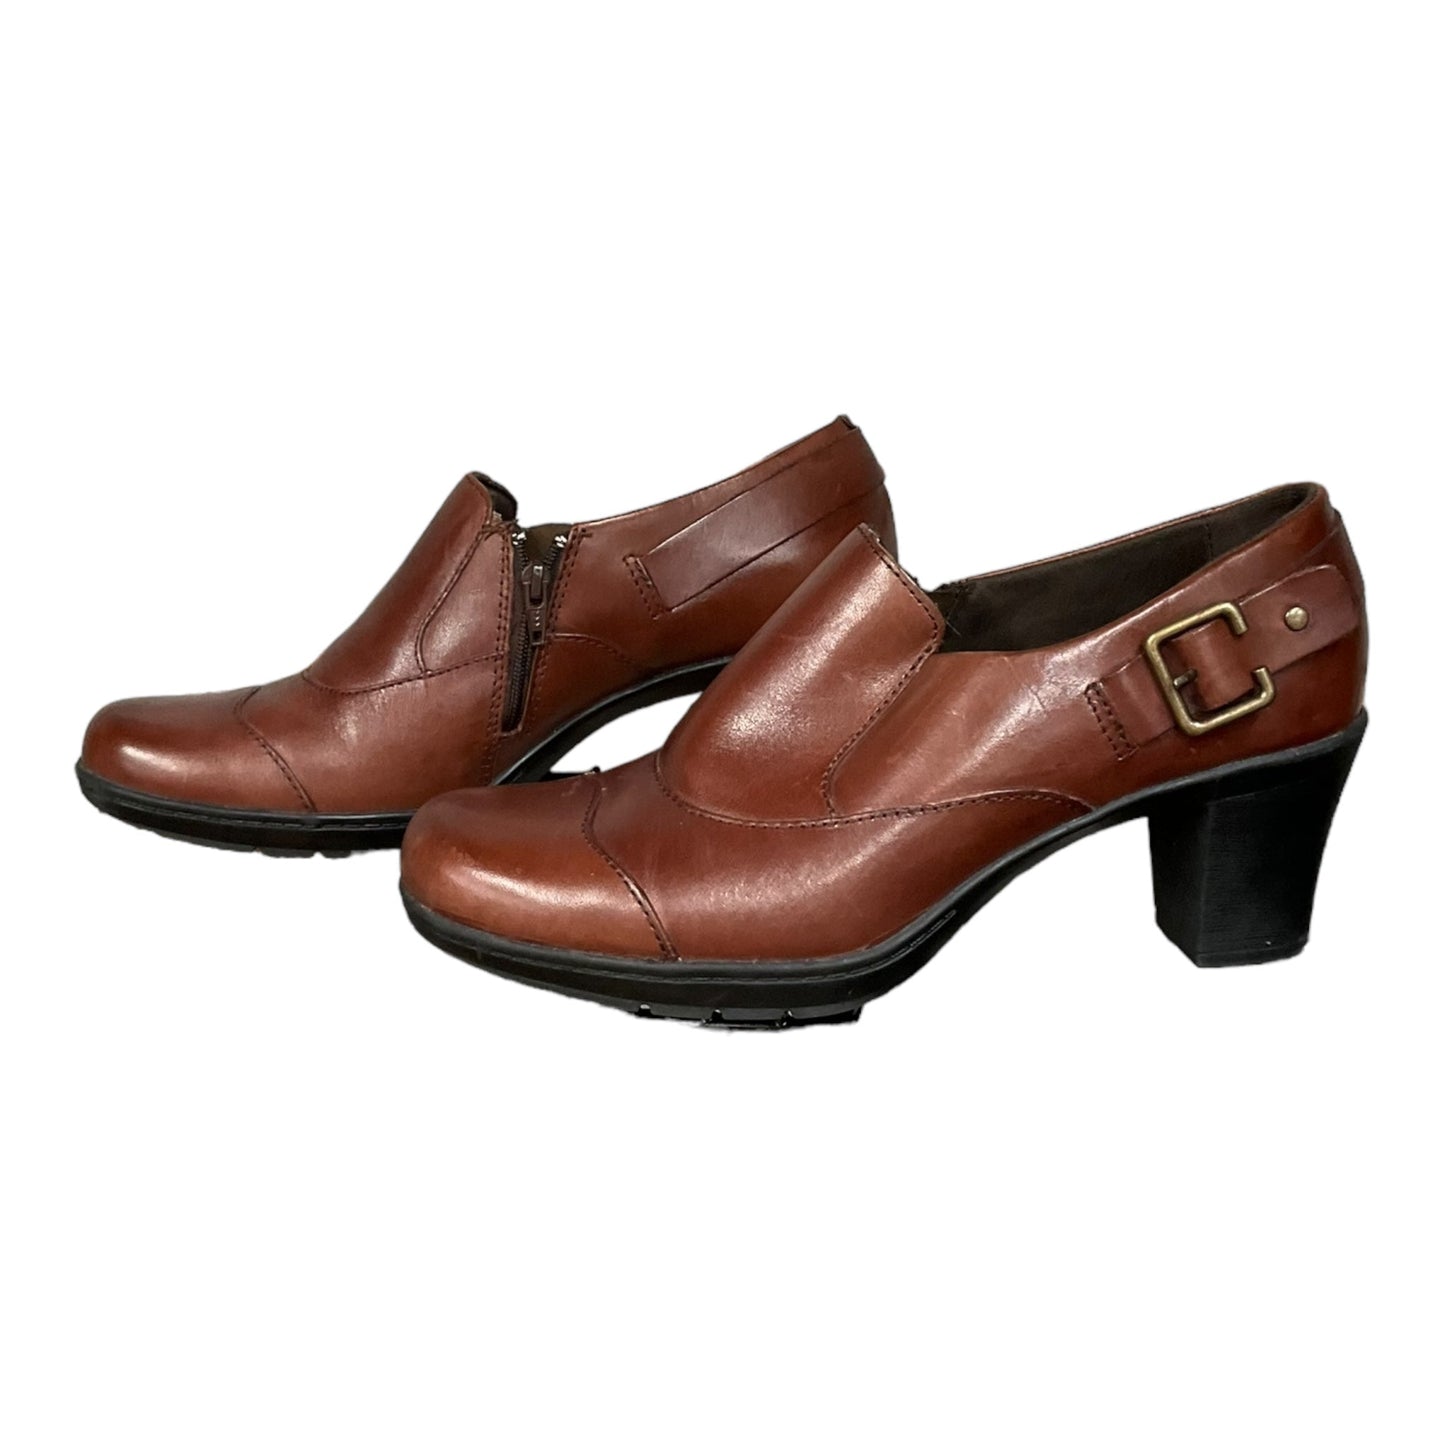 Brown Shoes Heels Block Clarks, Size 9